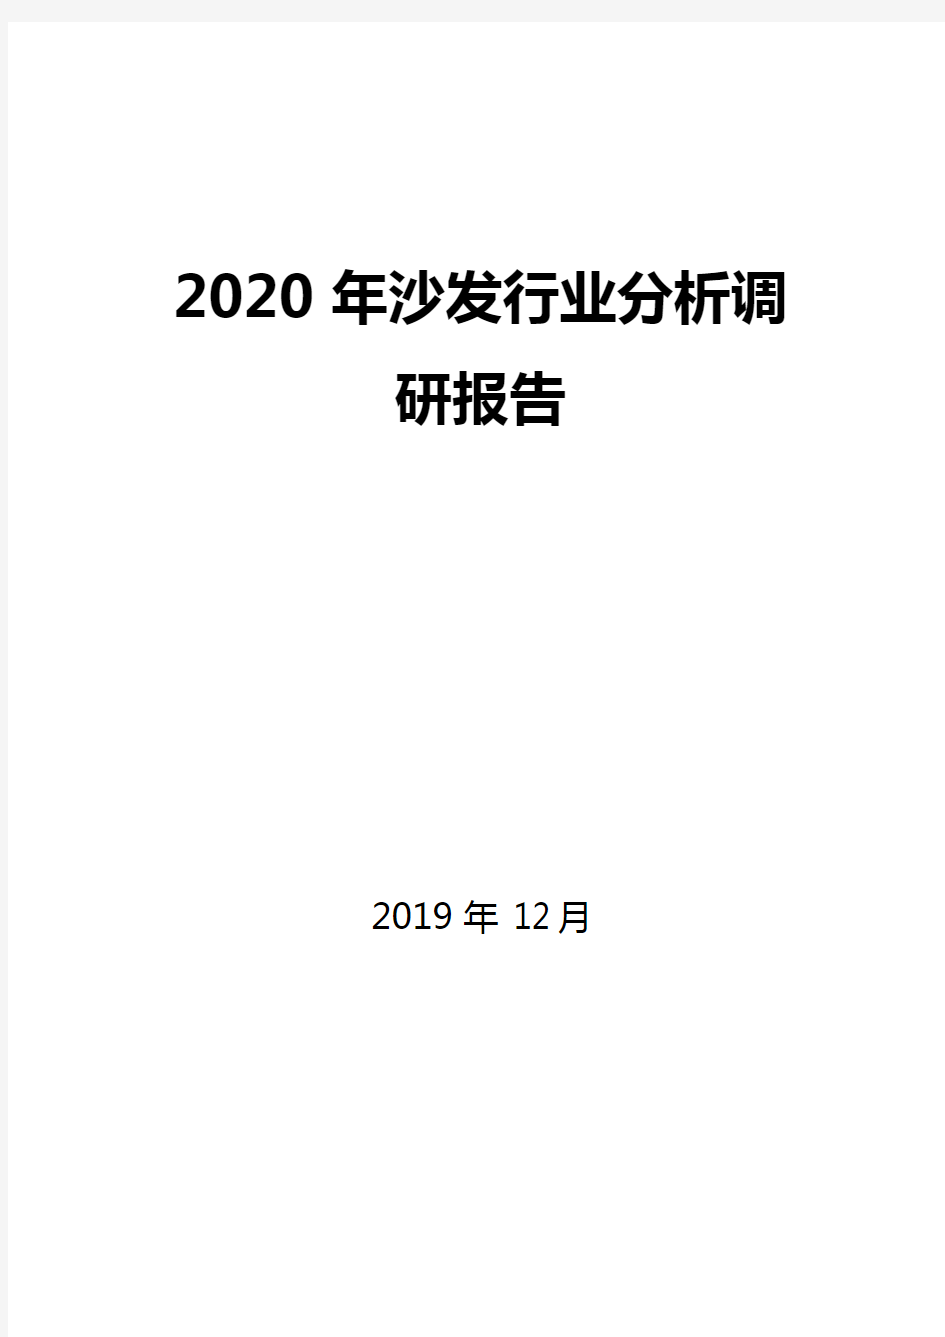 2020年沙发行业分析调研报告